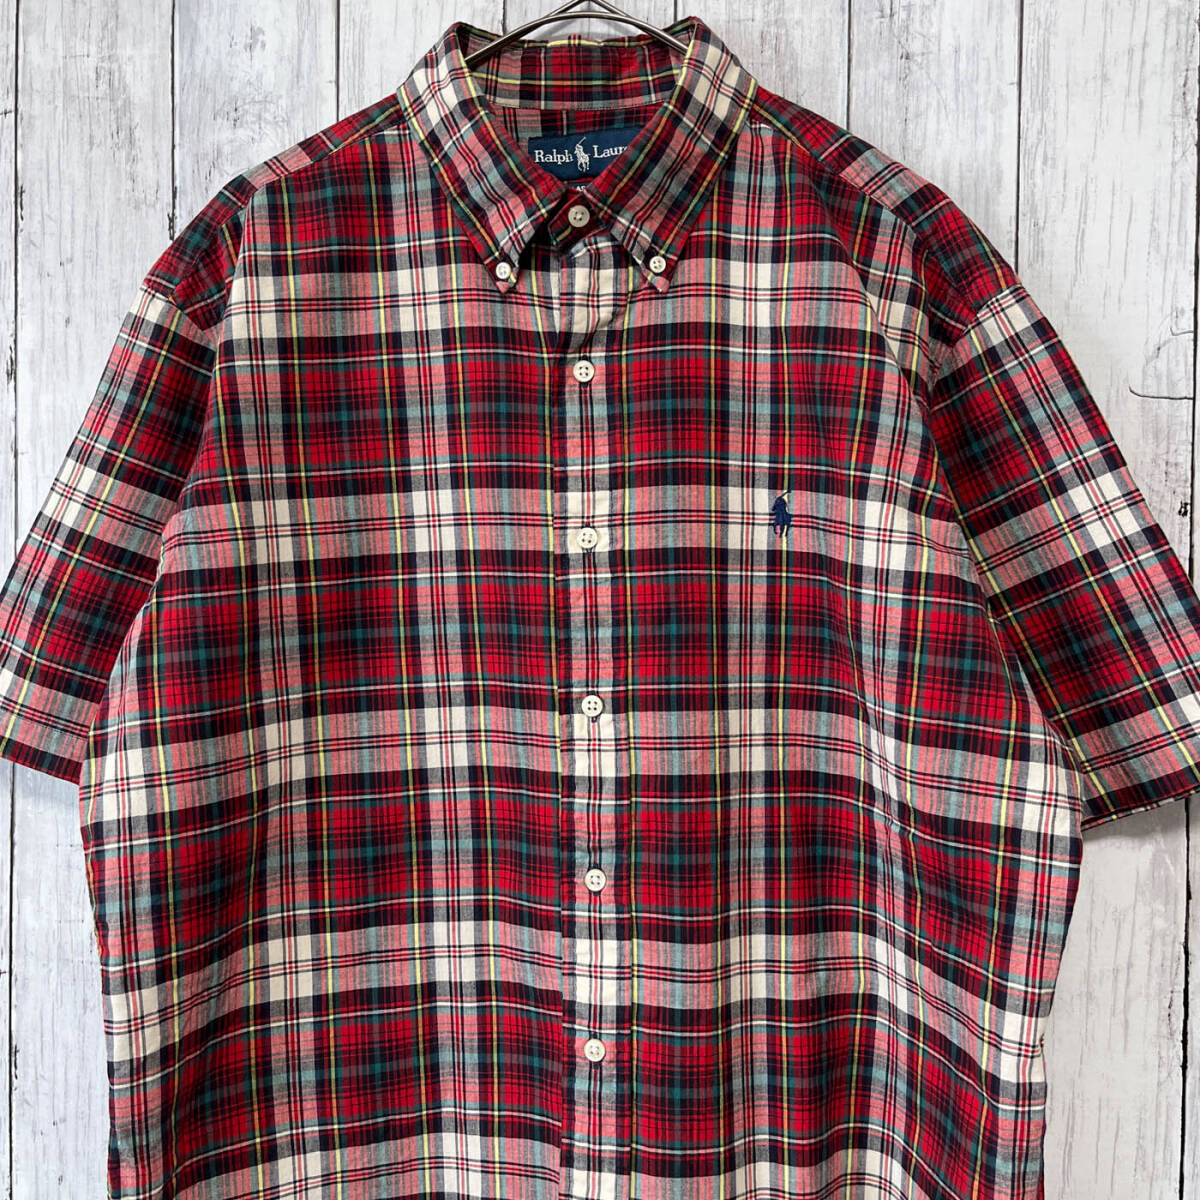 ラルフローレン Ralph Lauren CLASSIC FIT チェックシャツ 半袖シャツ メンズ ワンポイント コットン100% Lサイズ 5‐530 _画像1